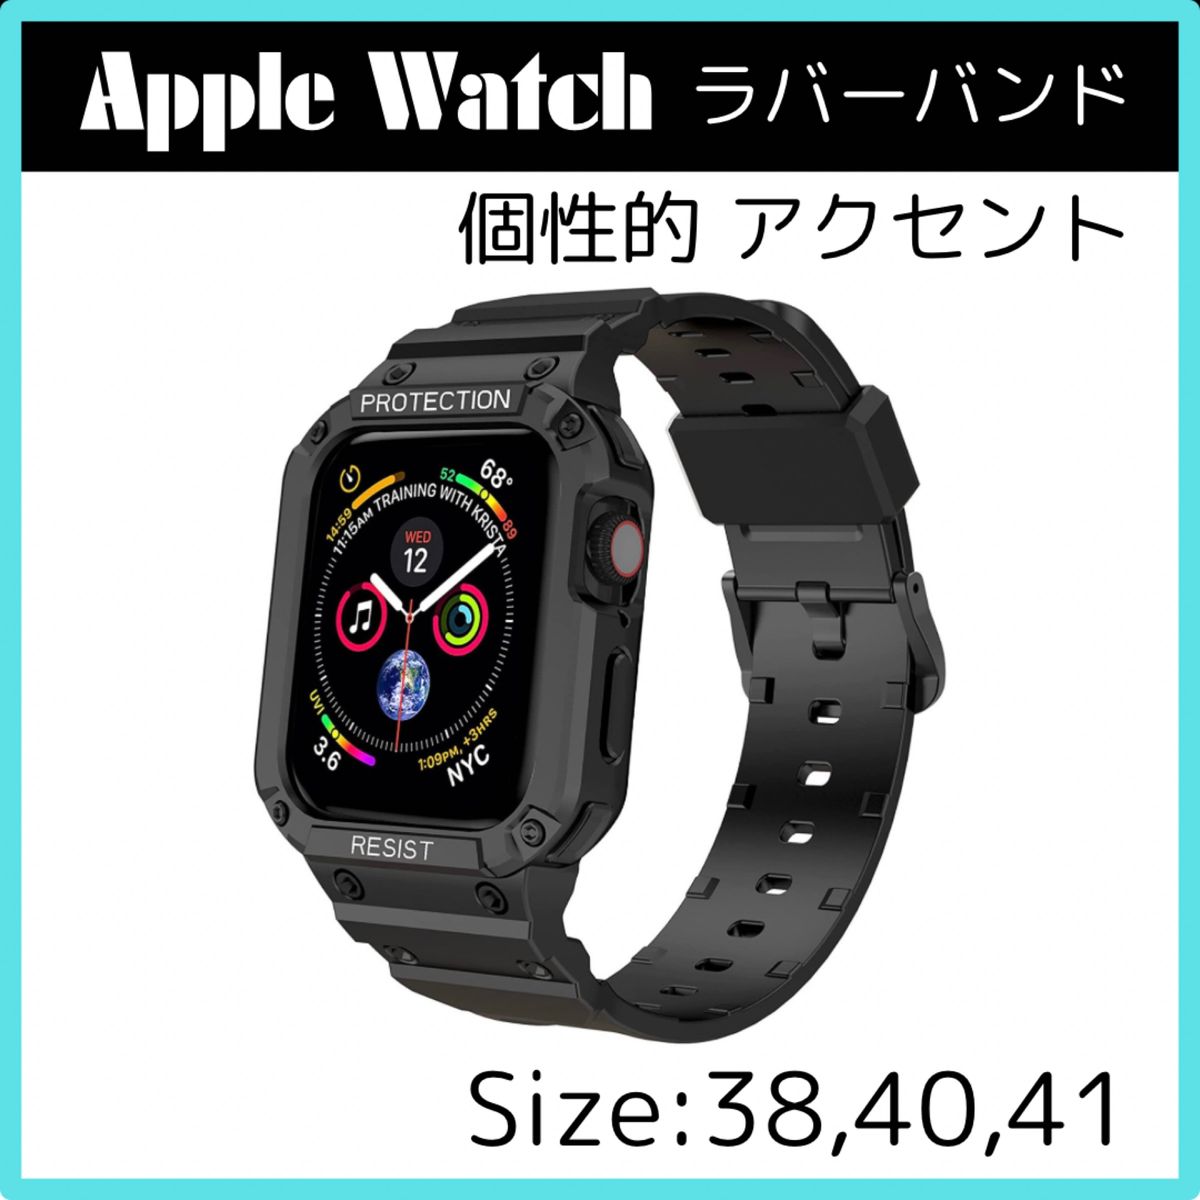 Apple Watch 38 40 41 アップル ウォッチ ケース 一体型 バンド 黒 ビジネス カジュアル ブラック